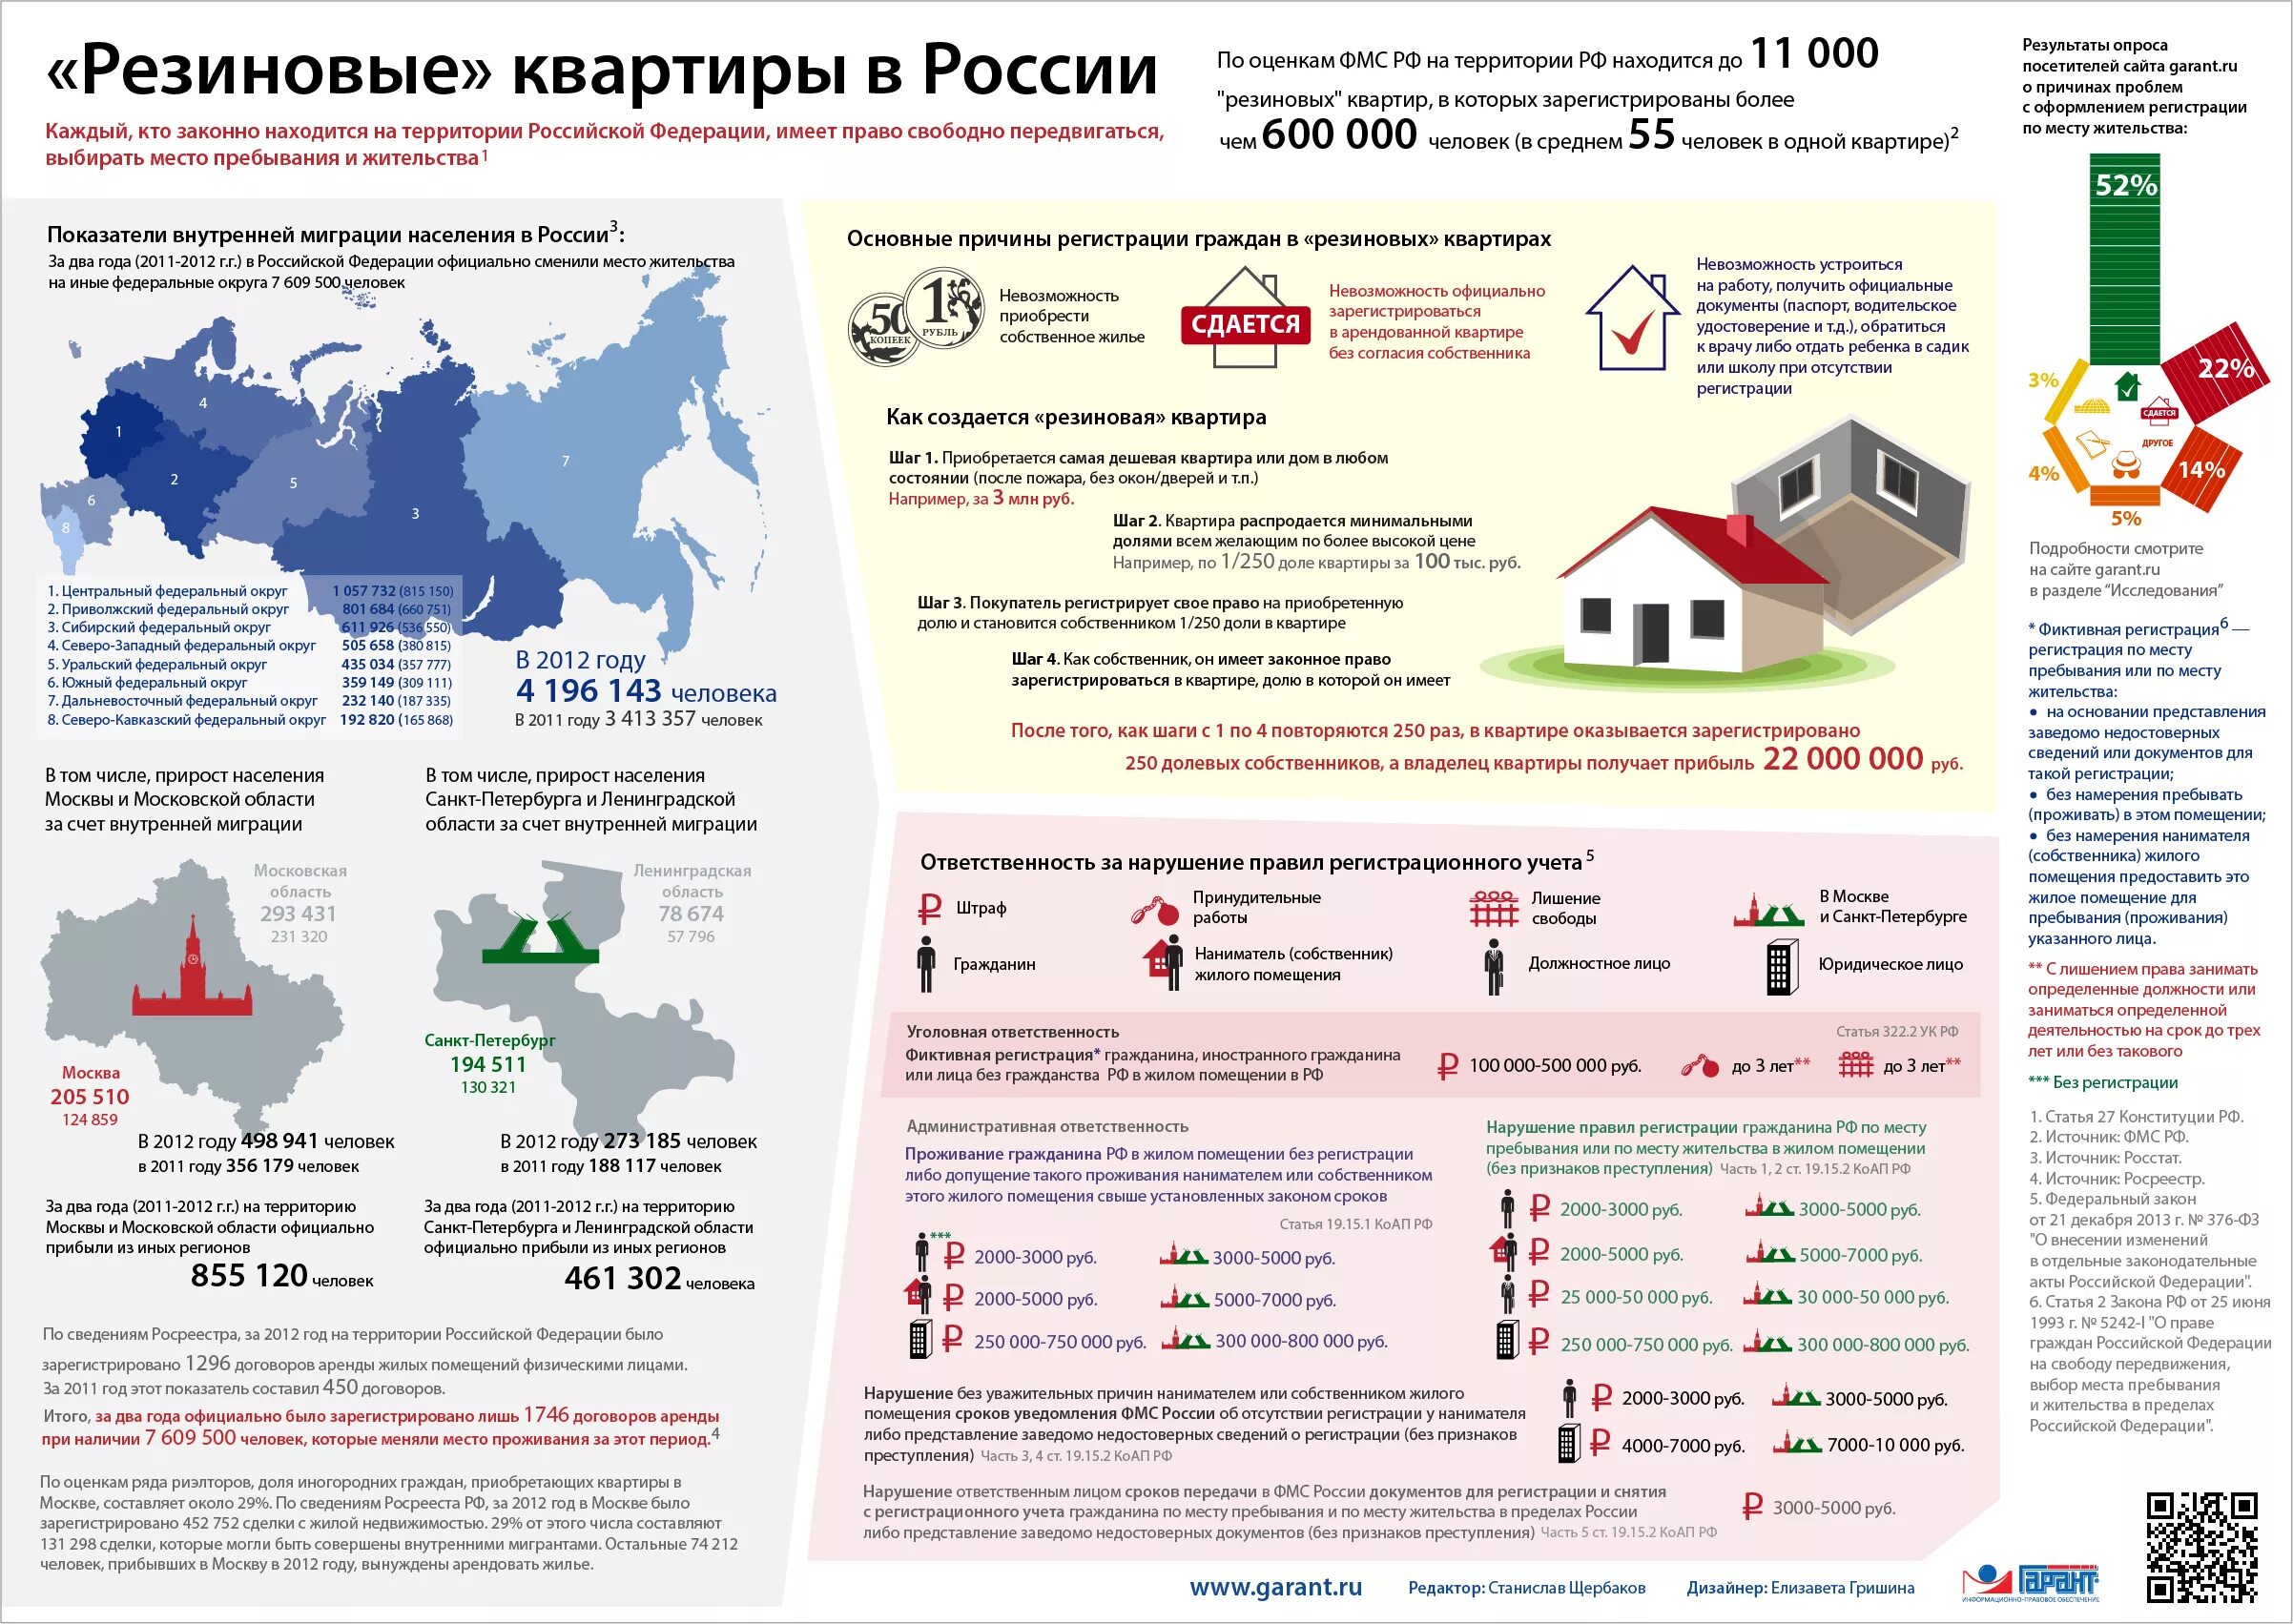 Жилого помещения в зависимости от. Закон о резиновых квартирах. Миграция в России инфографика. Инфографика помещения. Инфографика жилого помещения.